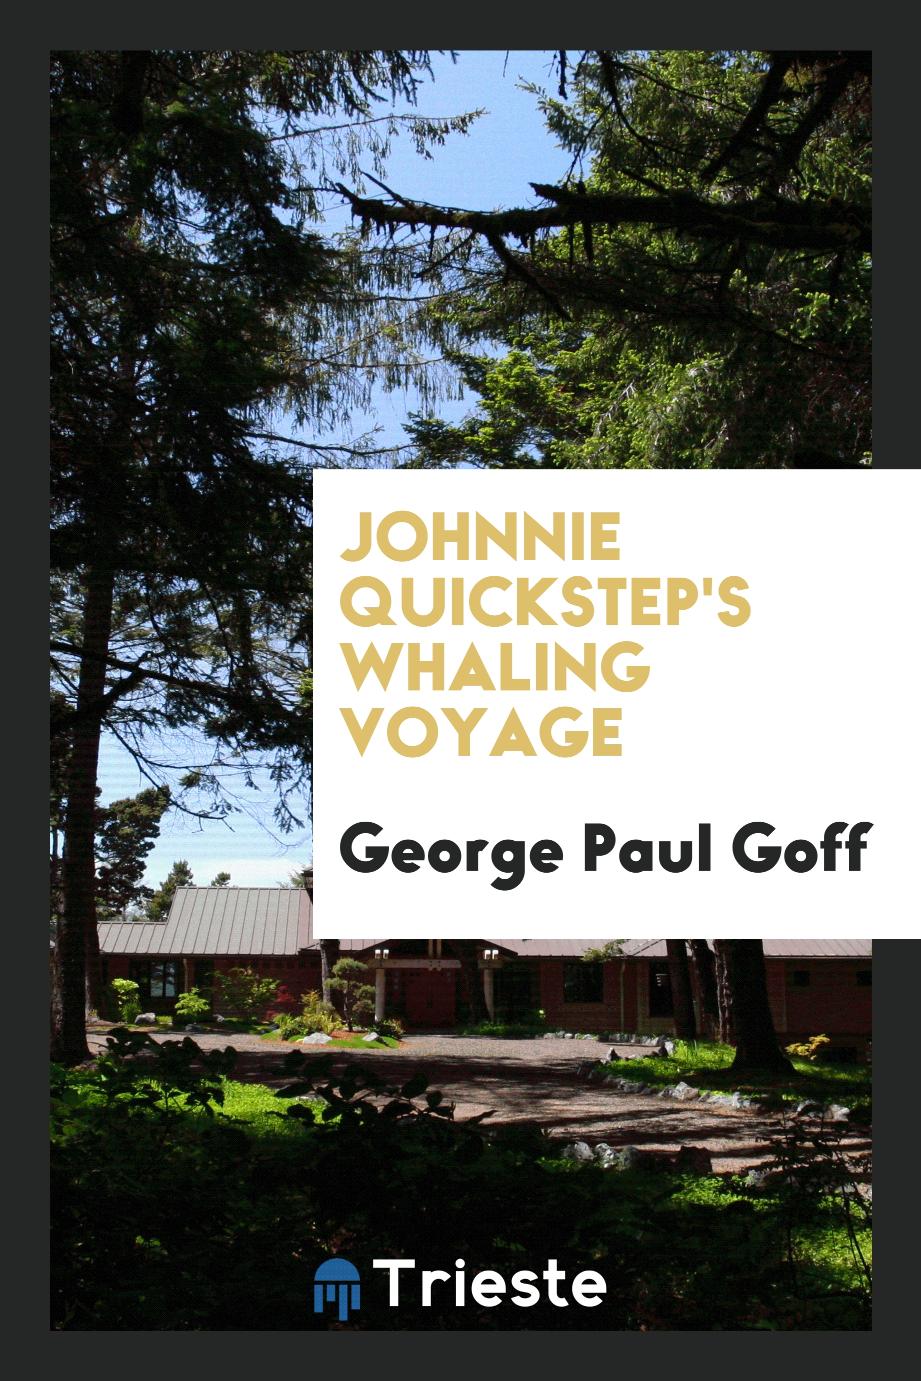 Johnnie Quickstep's whaling voyage